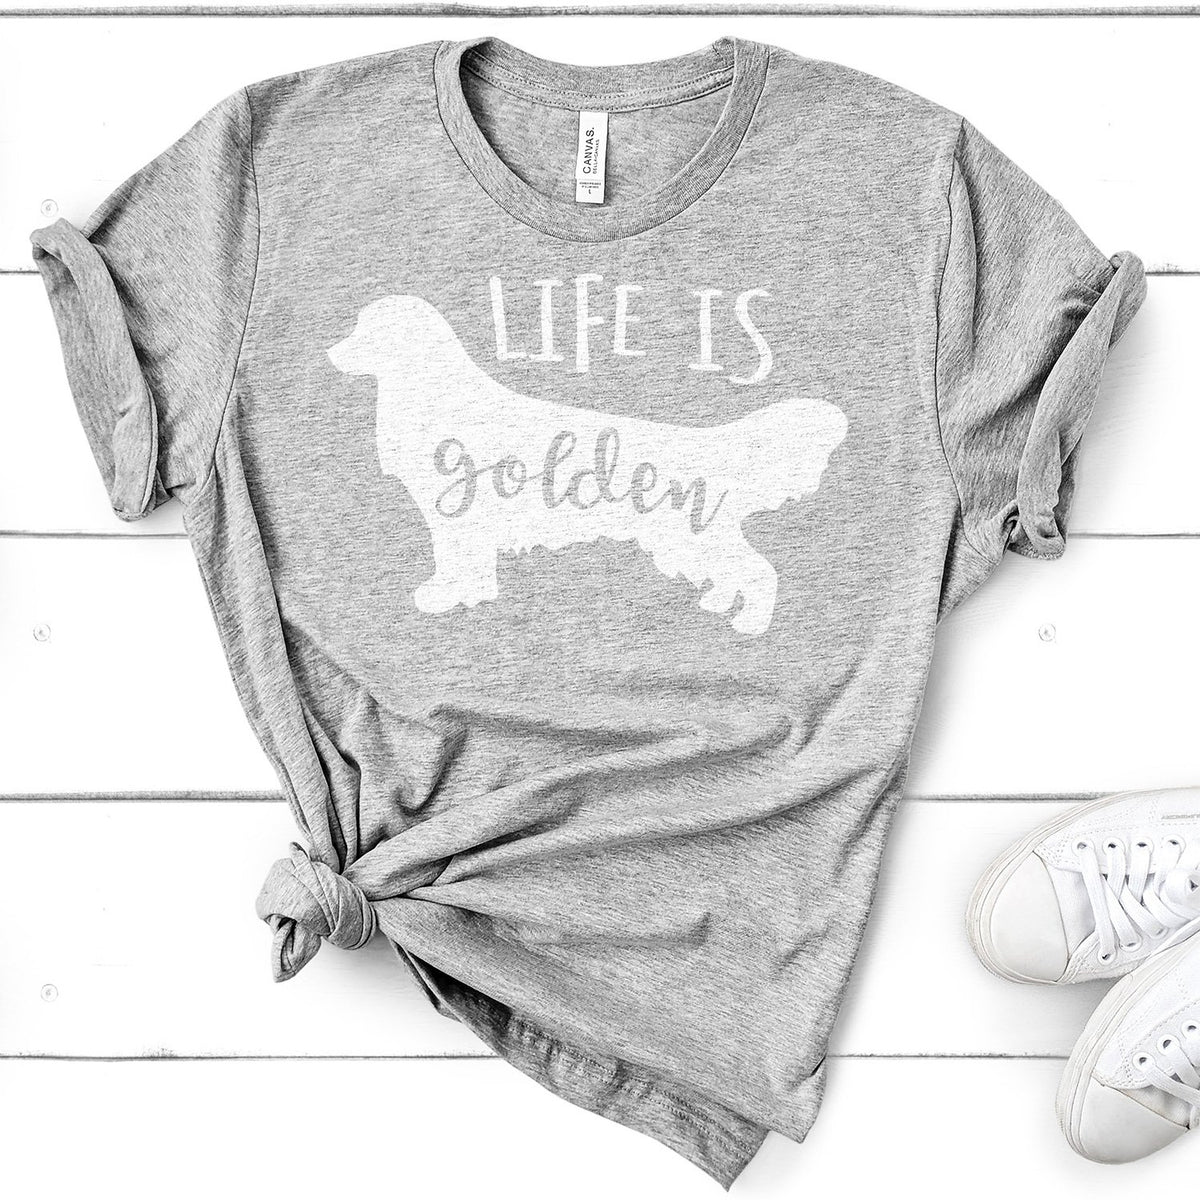 Life is Golden Retriever - Short Sleeve Tee Shirt